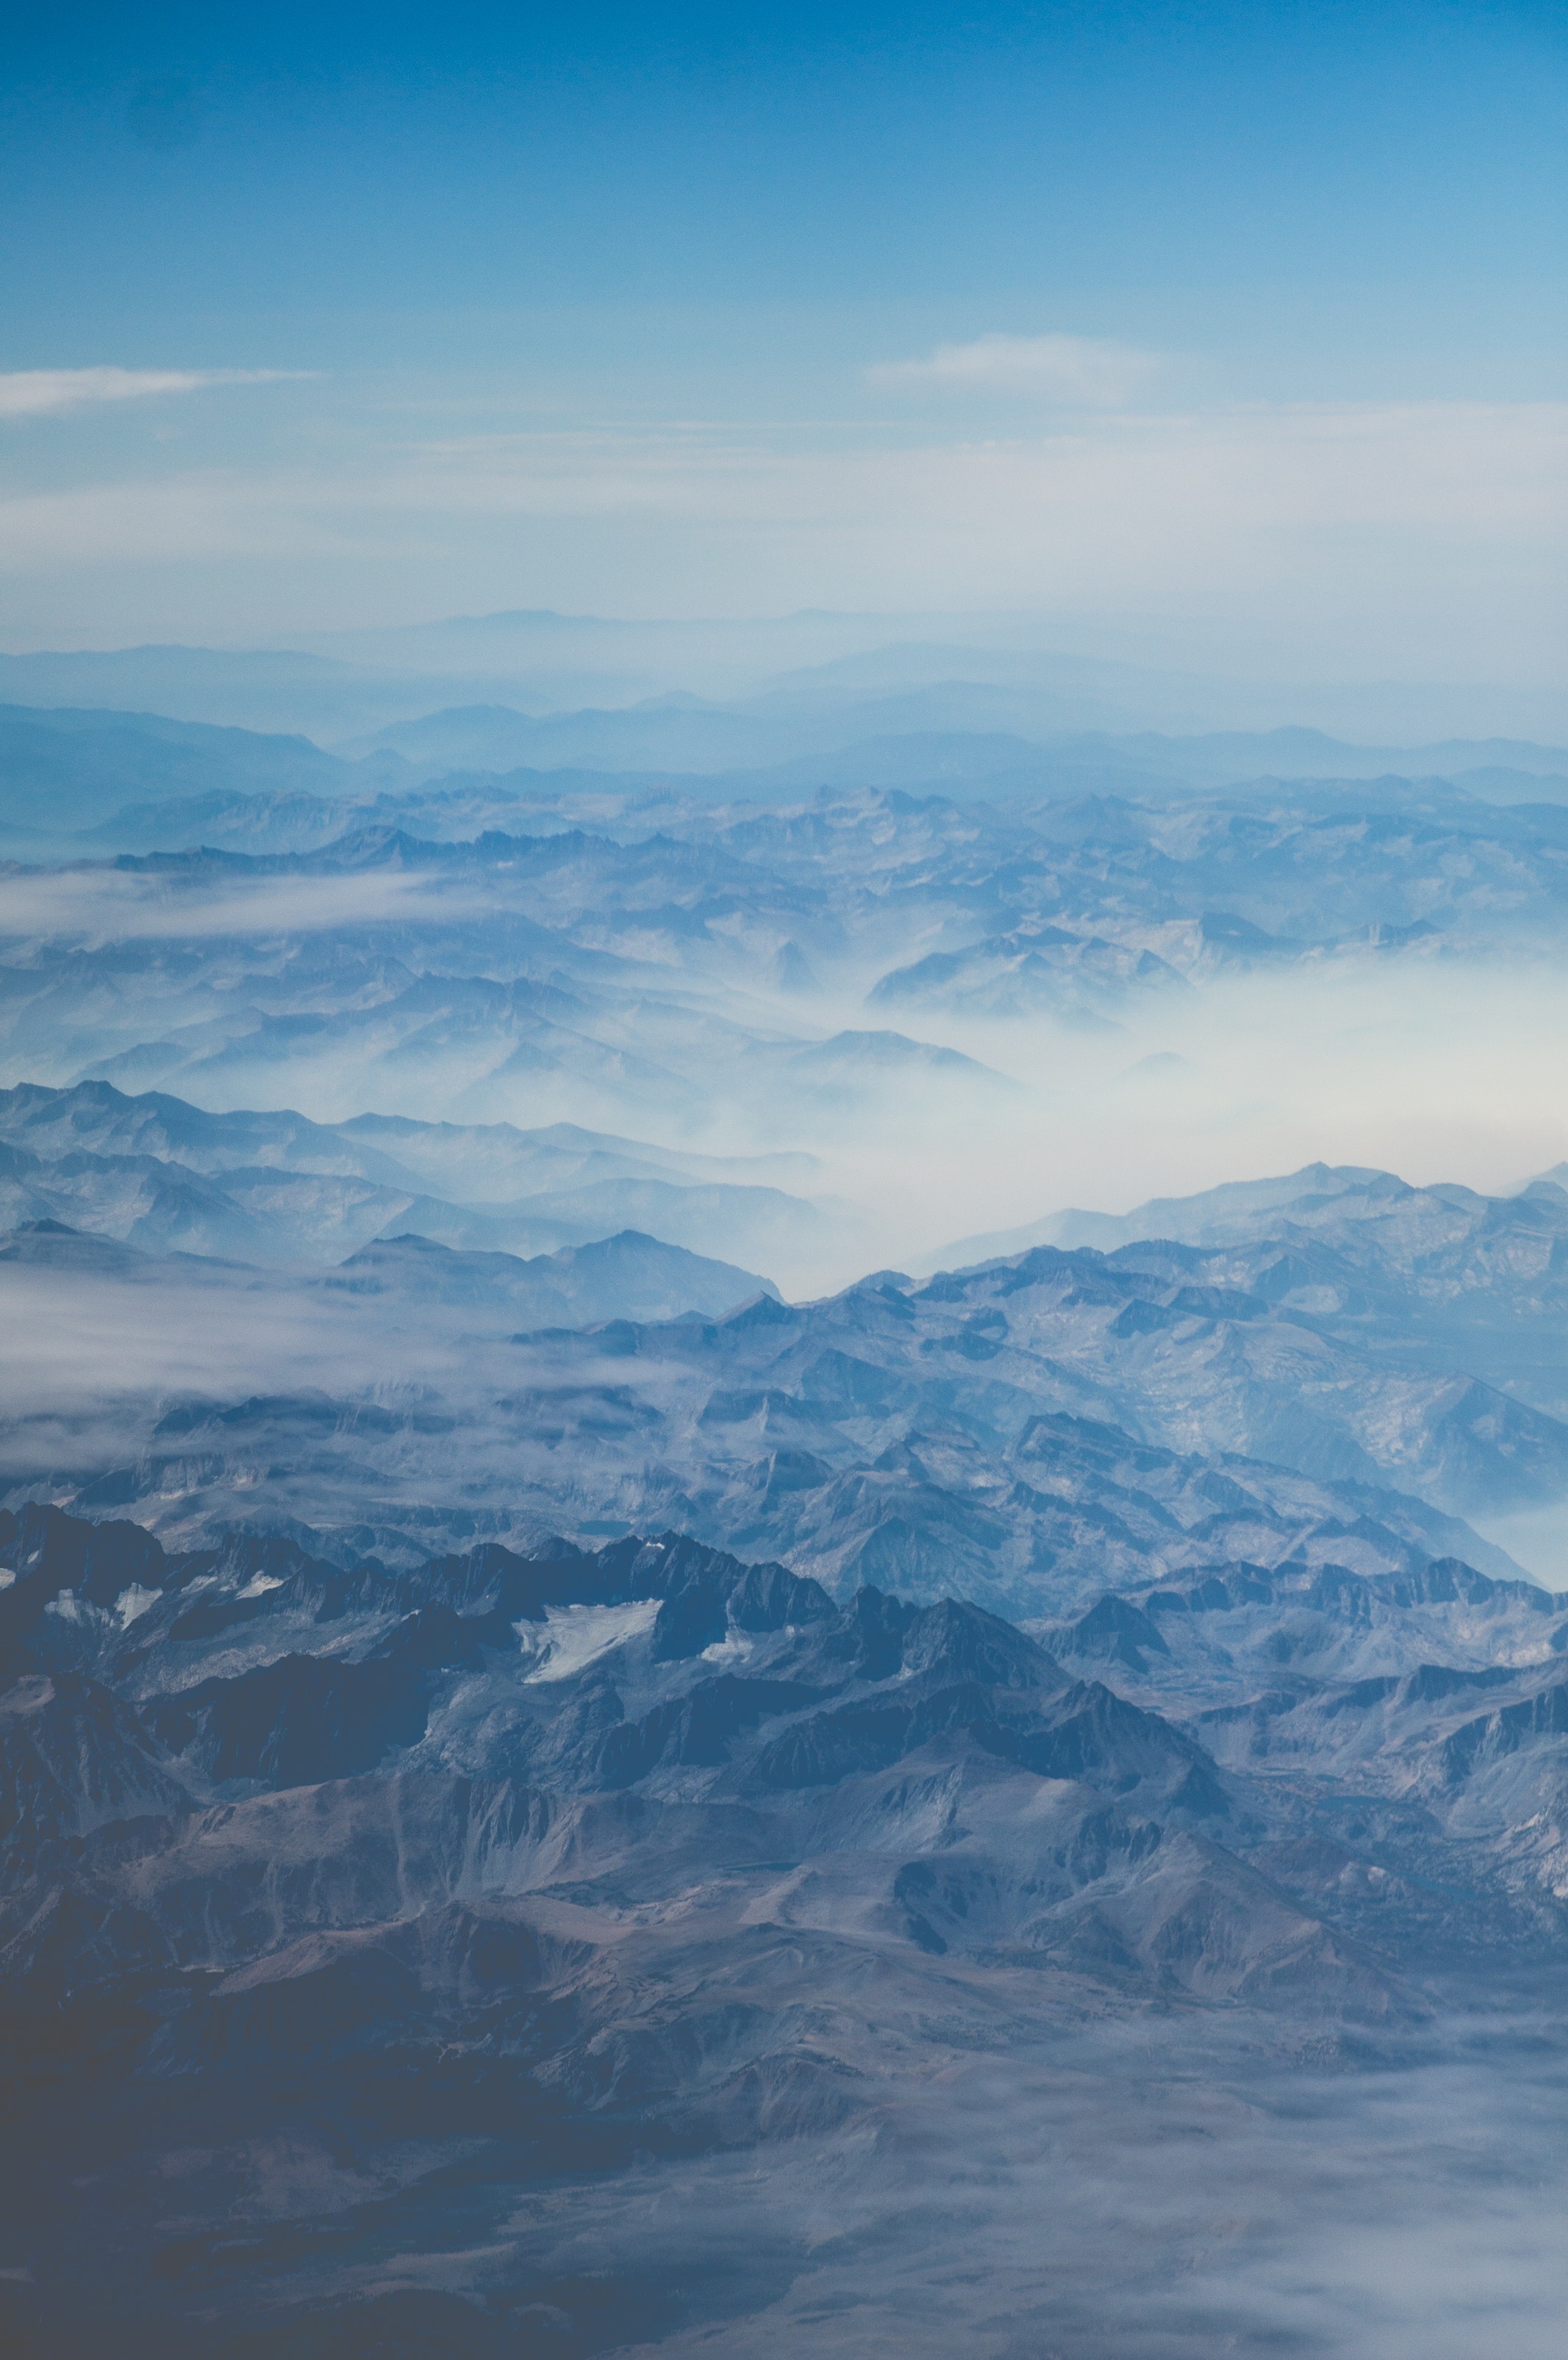 Dominik Lange, Landscape, Nature, Photography, Mountains, Snowy peak, Mist, Sky, Clouds, Far view Wallpaper